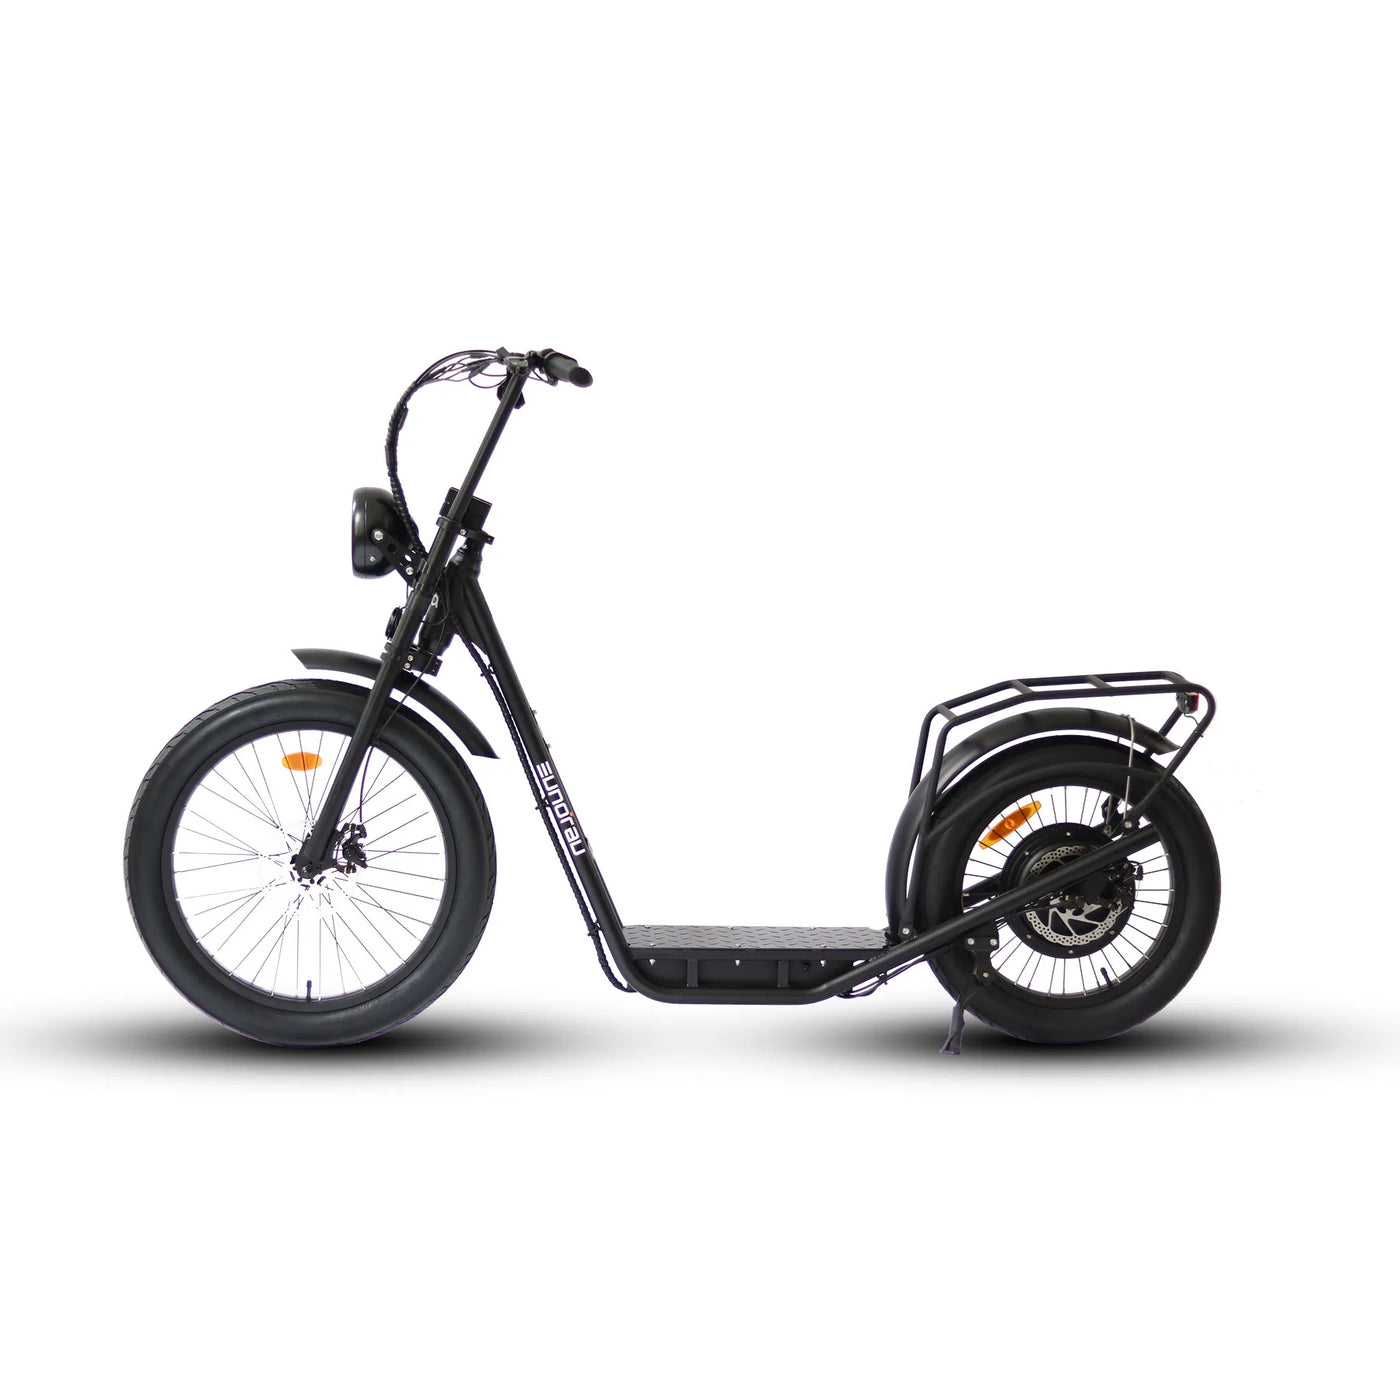 Eunorau Jumbo 1000W Electric Bicycle - Rider Cycles 